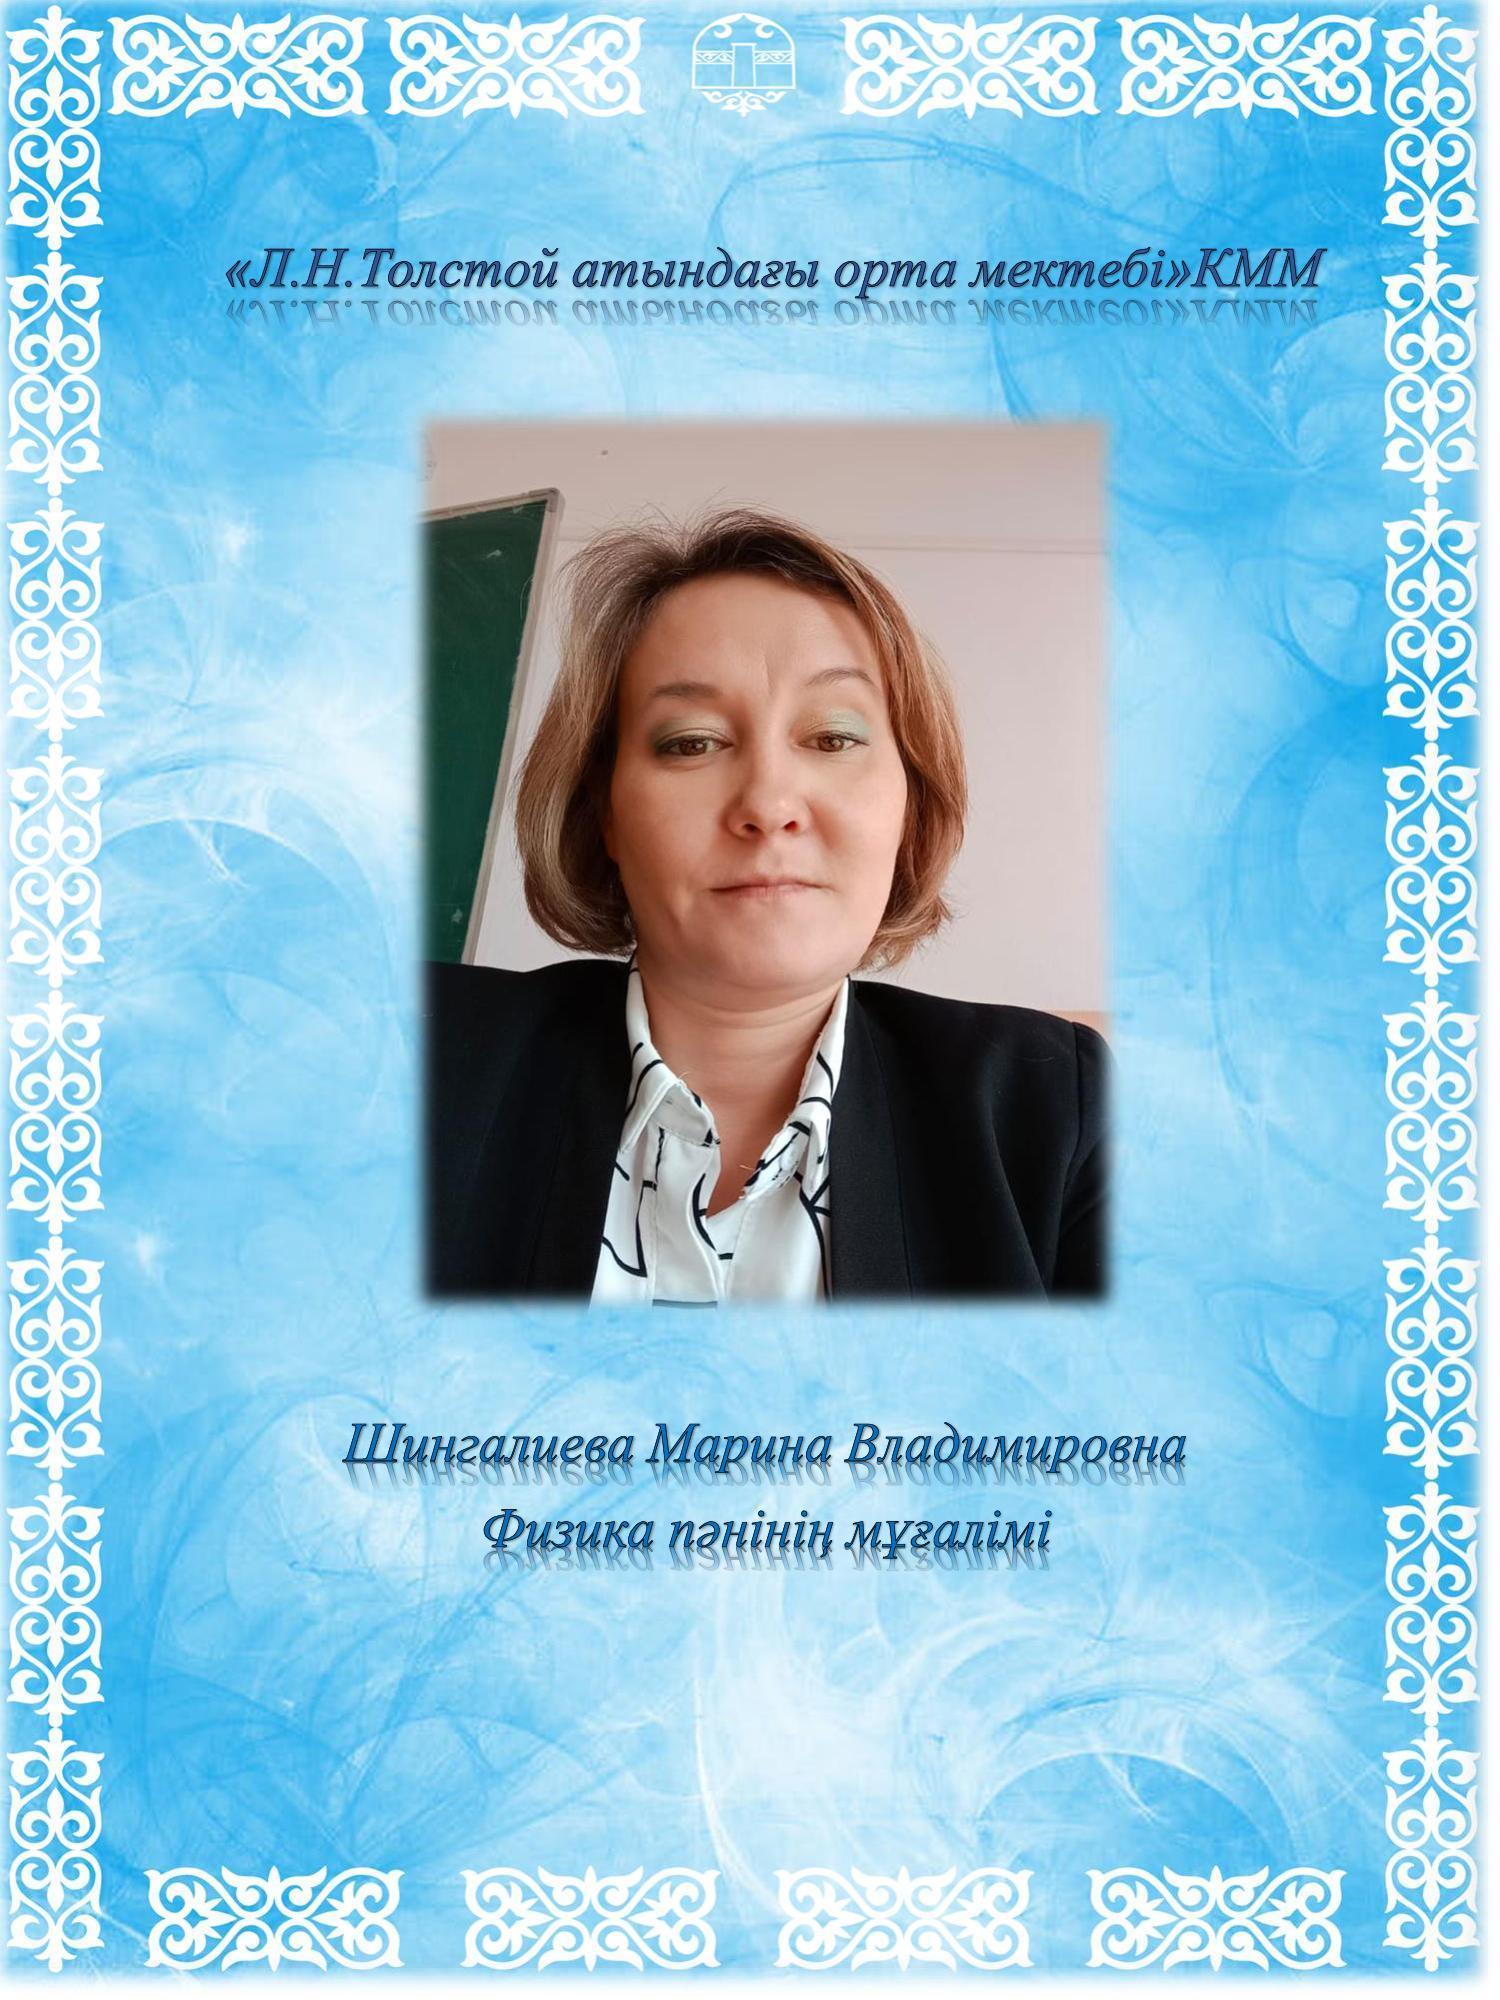 Шингалиева Марина Владимировна